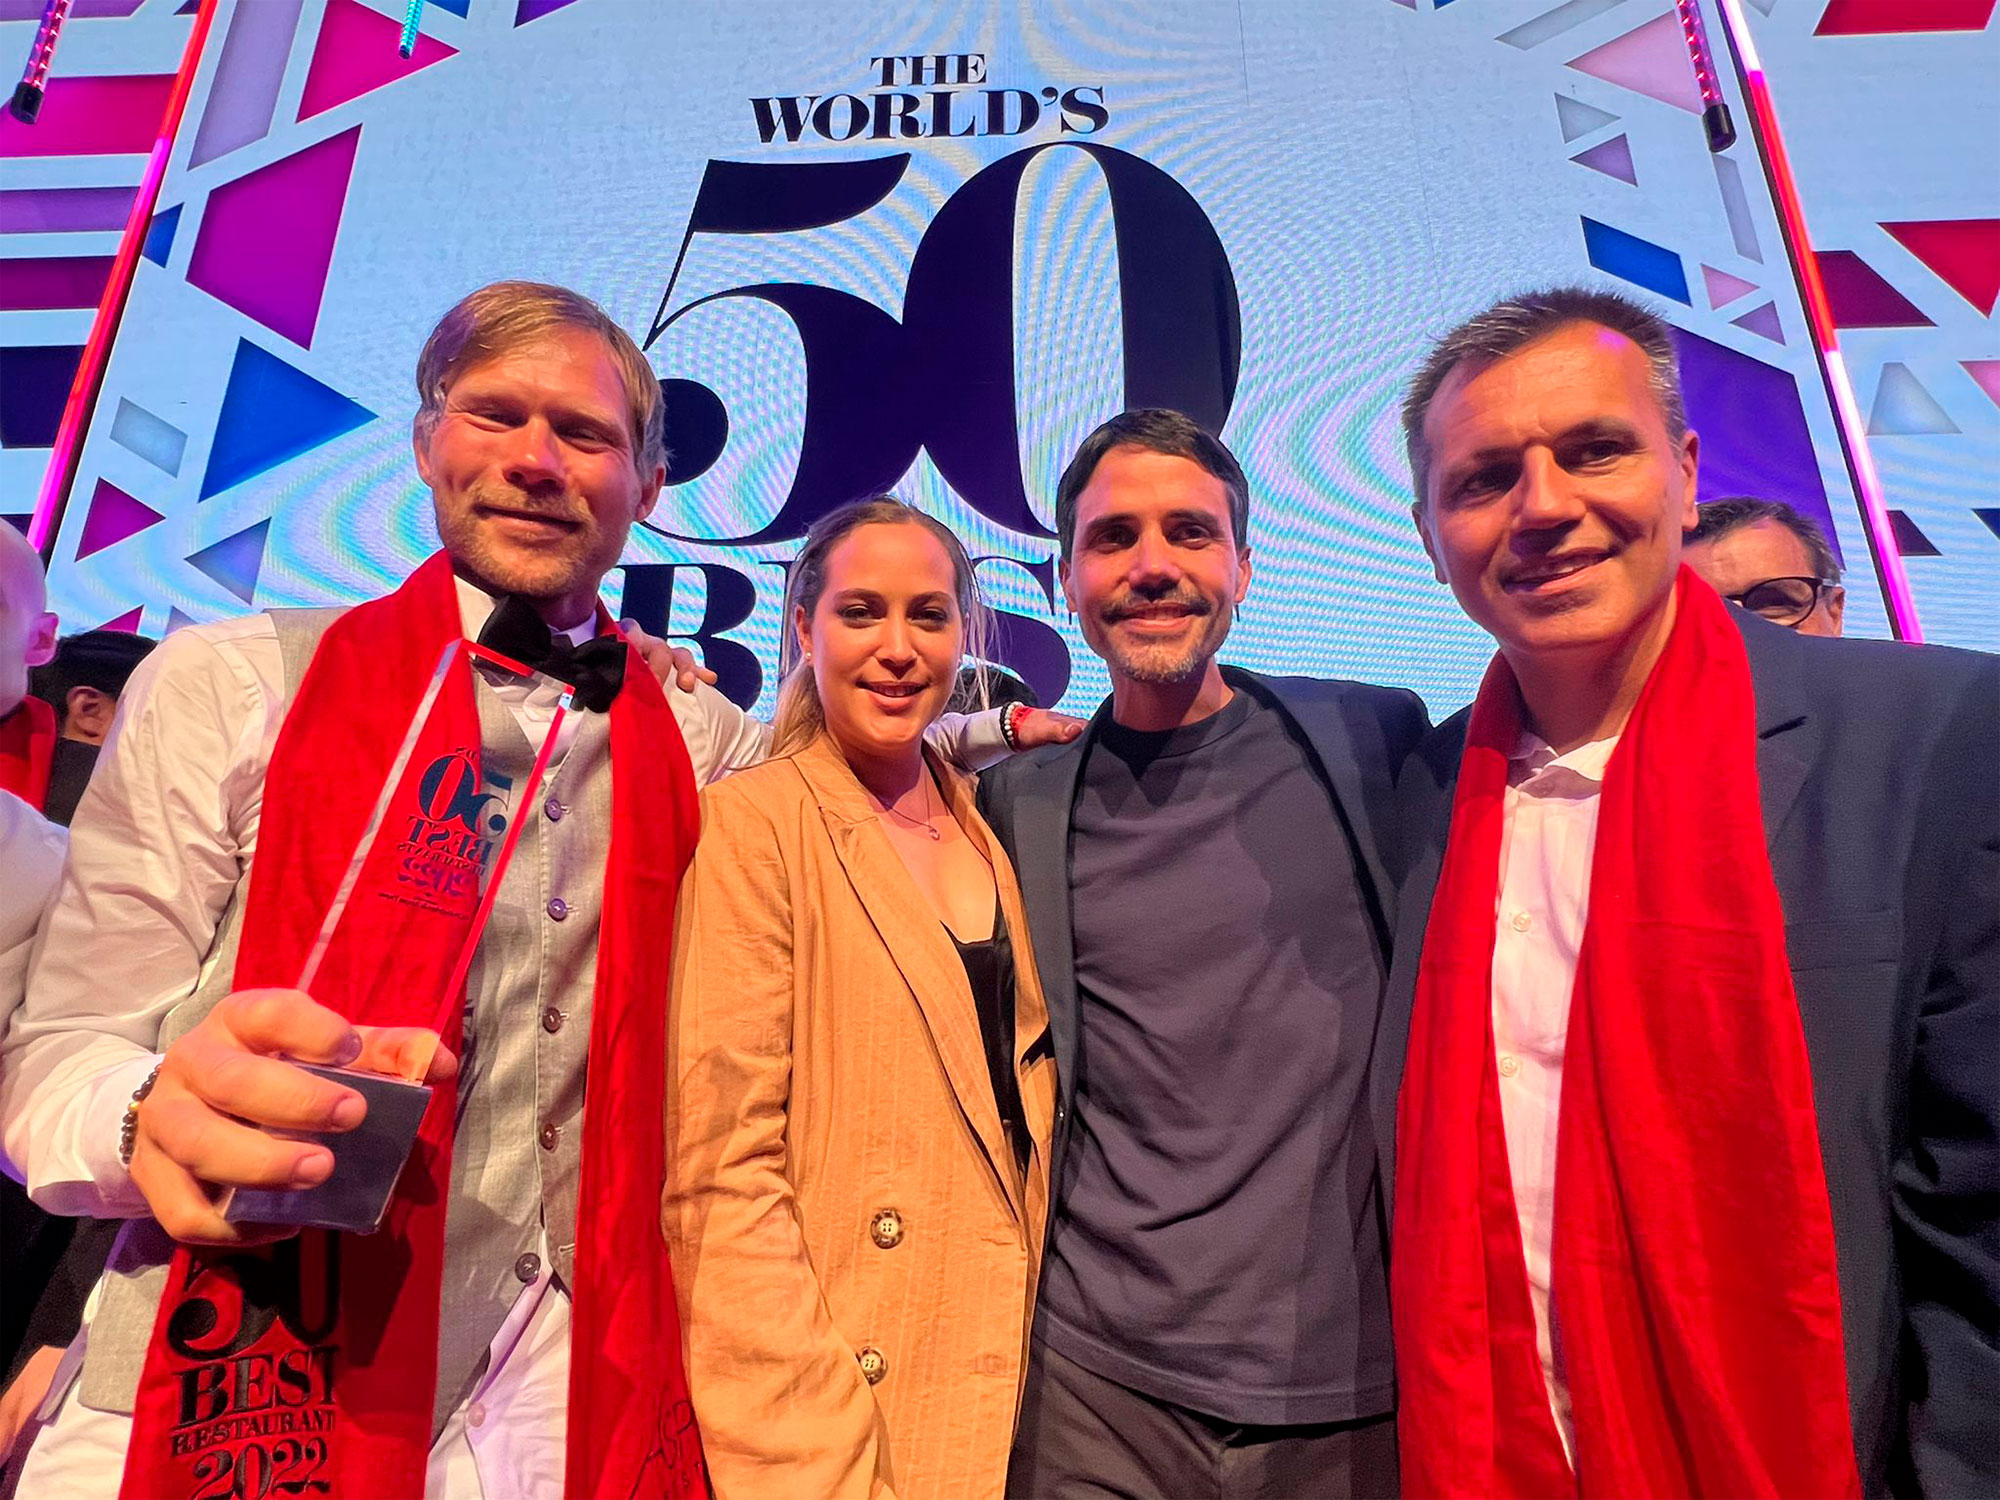 Rasmus Kofoed, Pía León, Virgilio Martínez y Oriol Castro en la gala de The World's 50 Best Restaurant